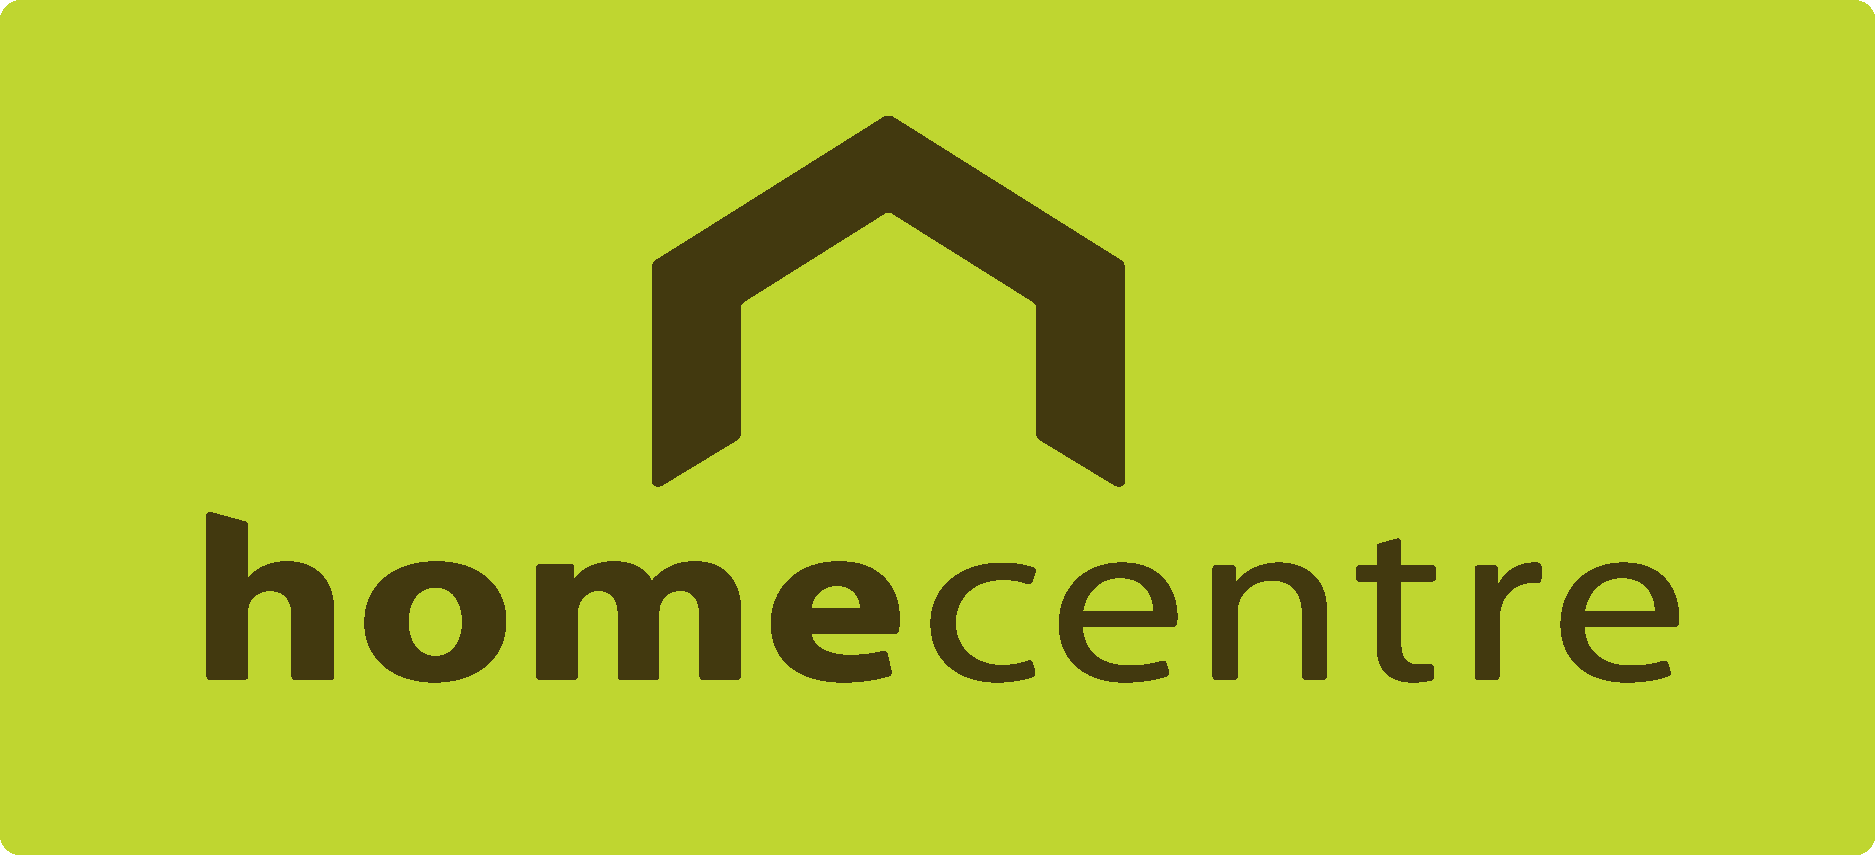 Home Center. Logo Home Centre. Myhome логотип. Home language Centre logo. Home regions